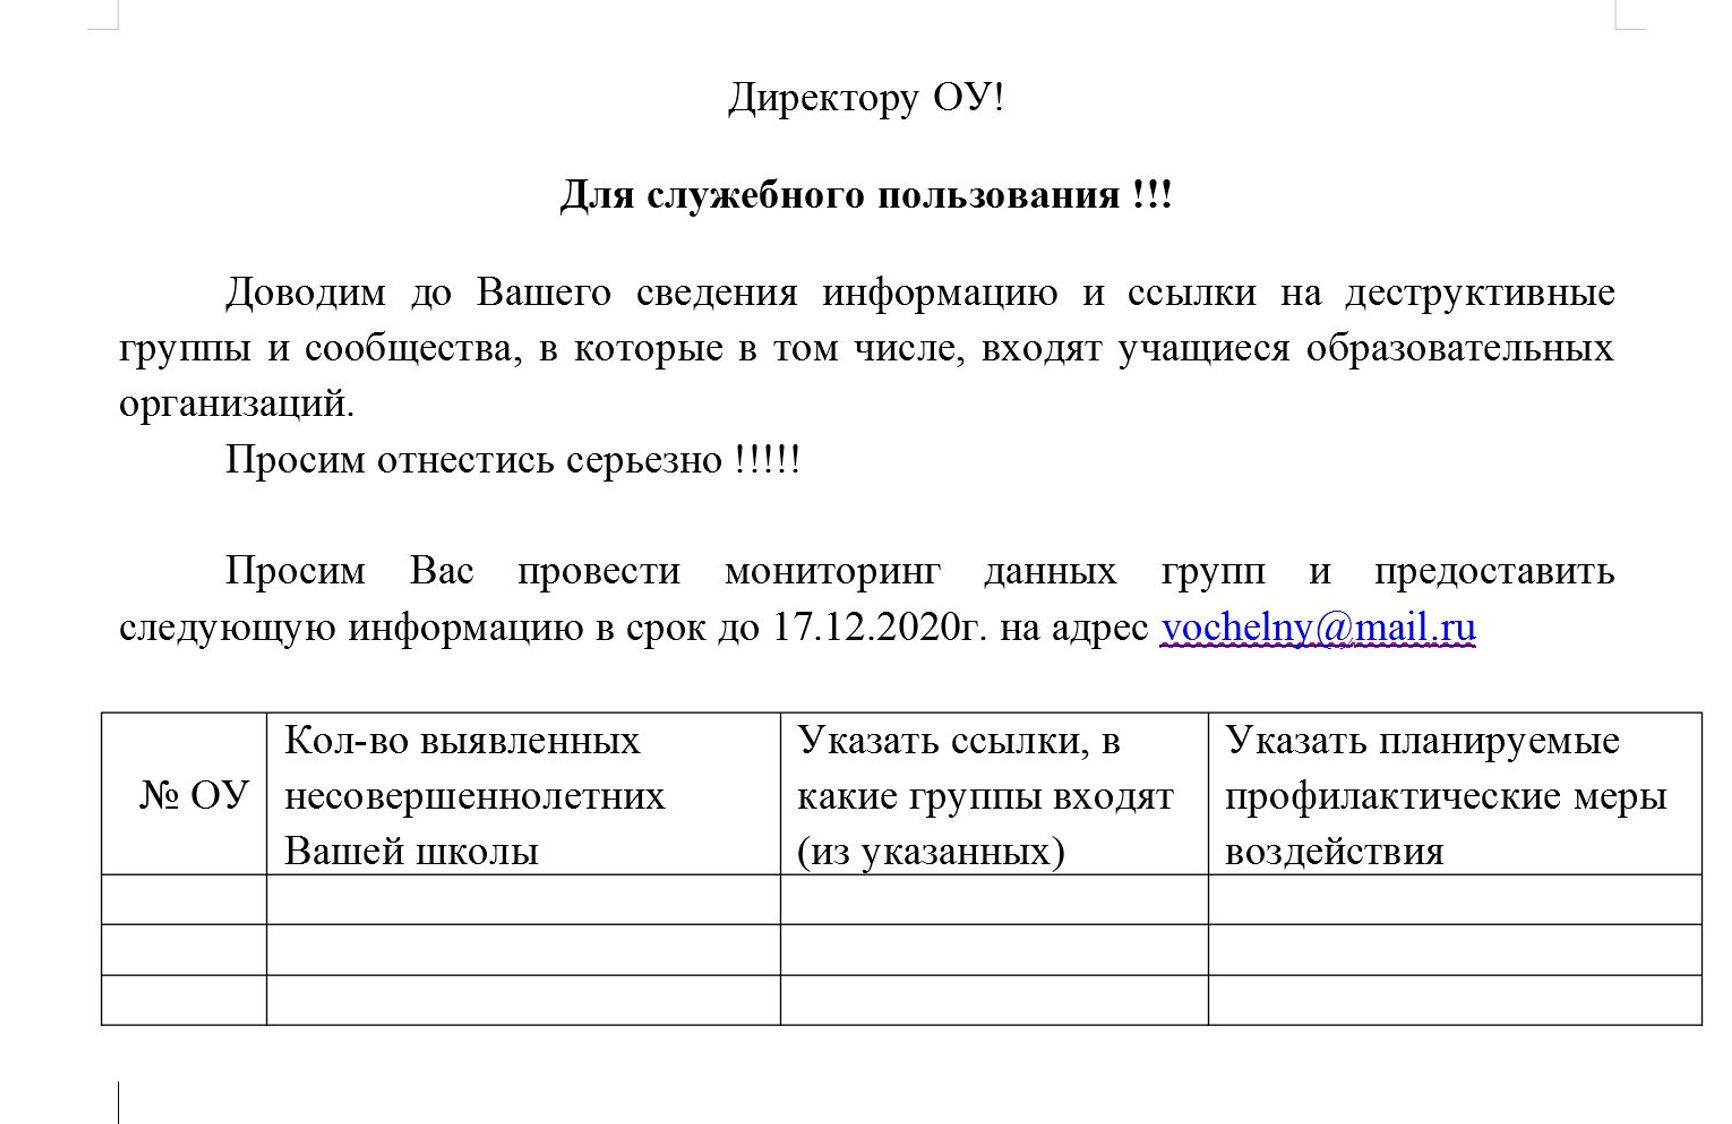 Вчителів в Татарстані просять надати «профілактичні заходи впливу» на школярів, підписаних на групи про Навального і ФБК